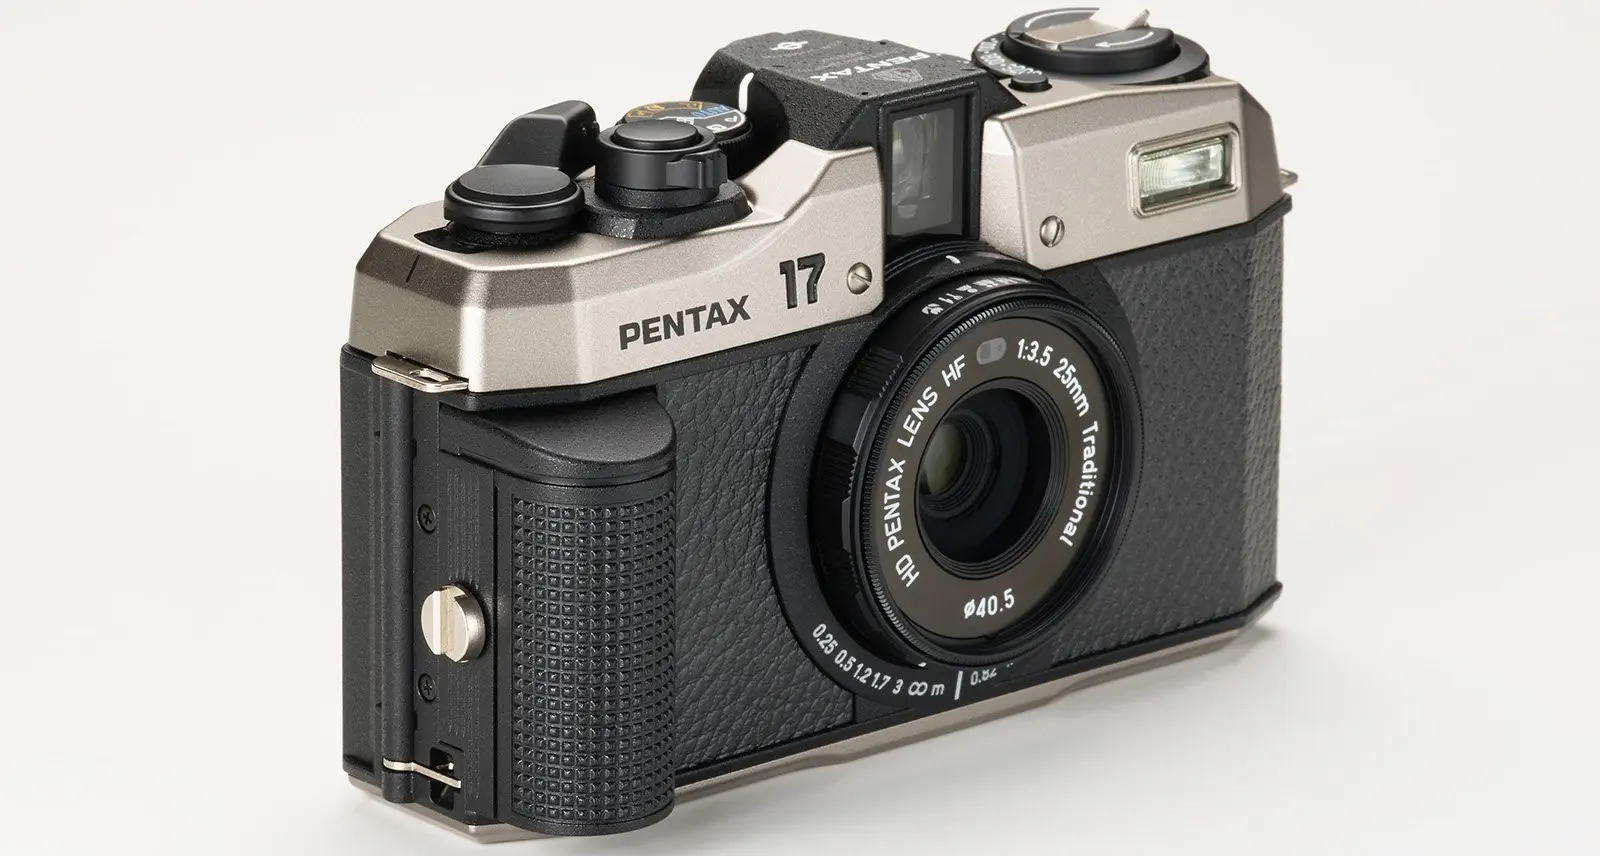 Pentax ra mắt máy ảnh film Pentax 17, định dạng half frame gấp đôi số ảnh